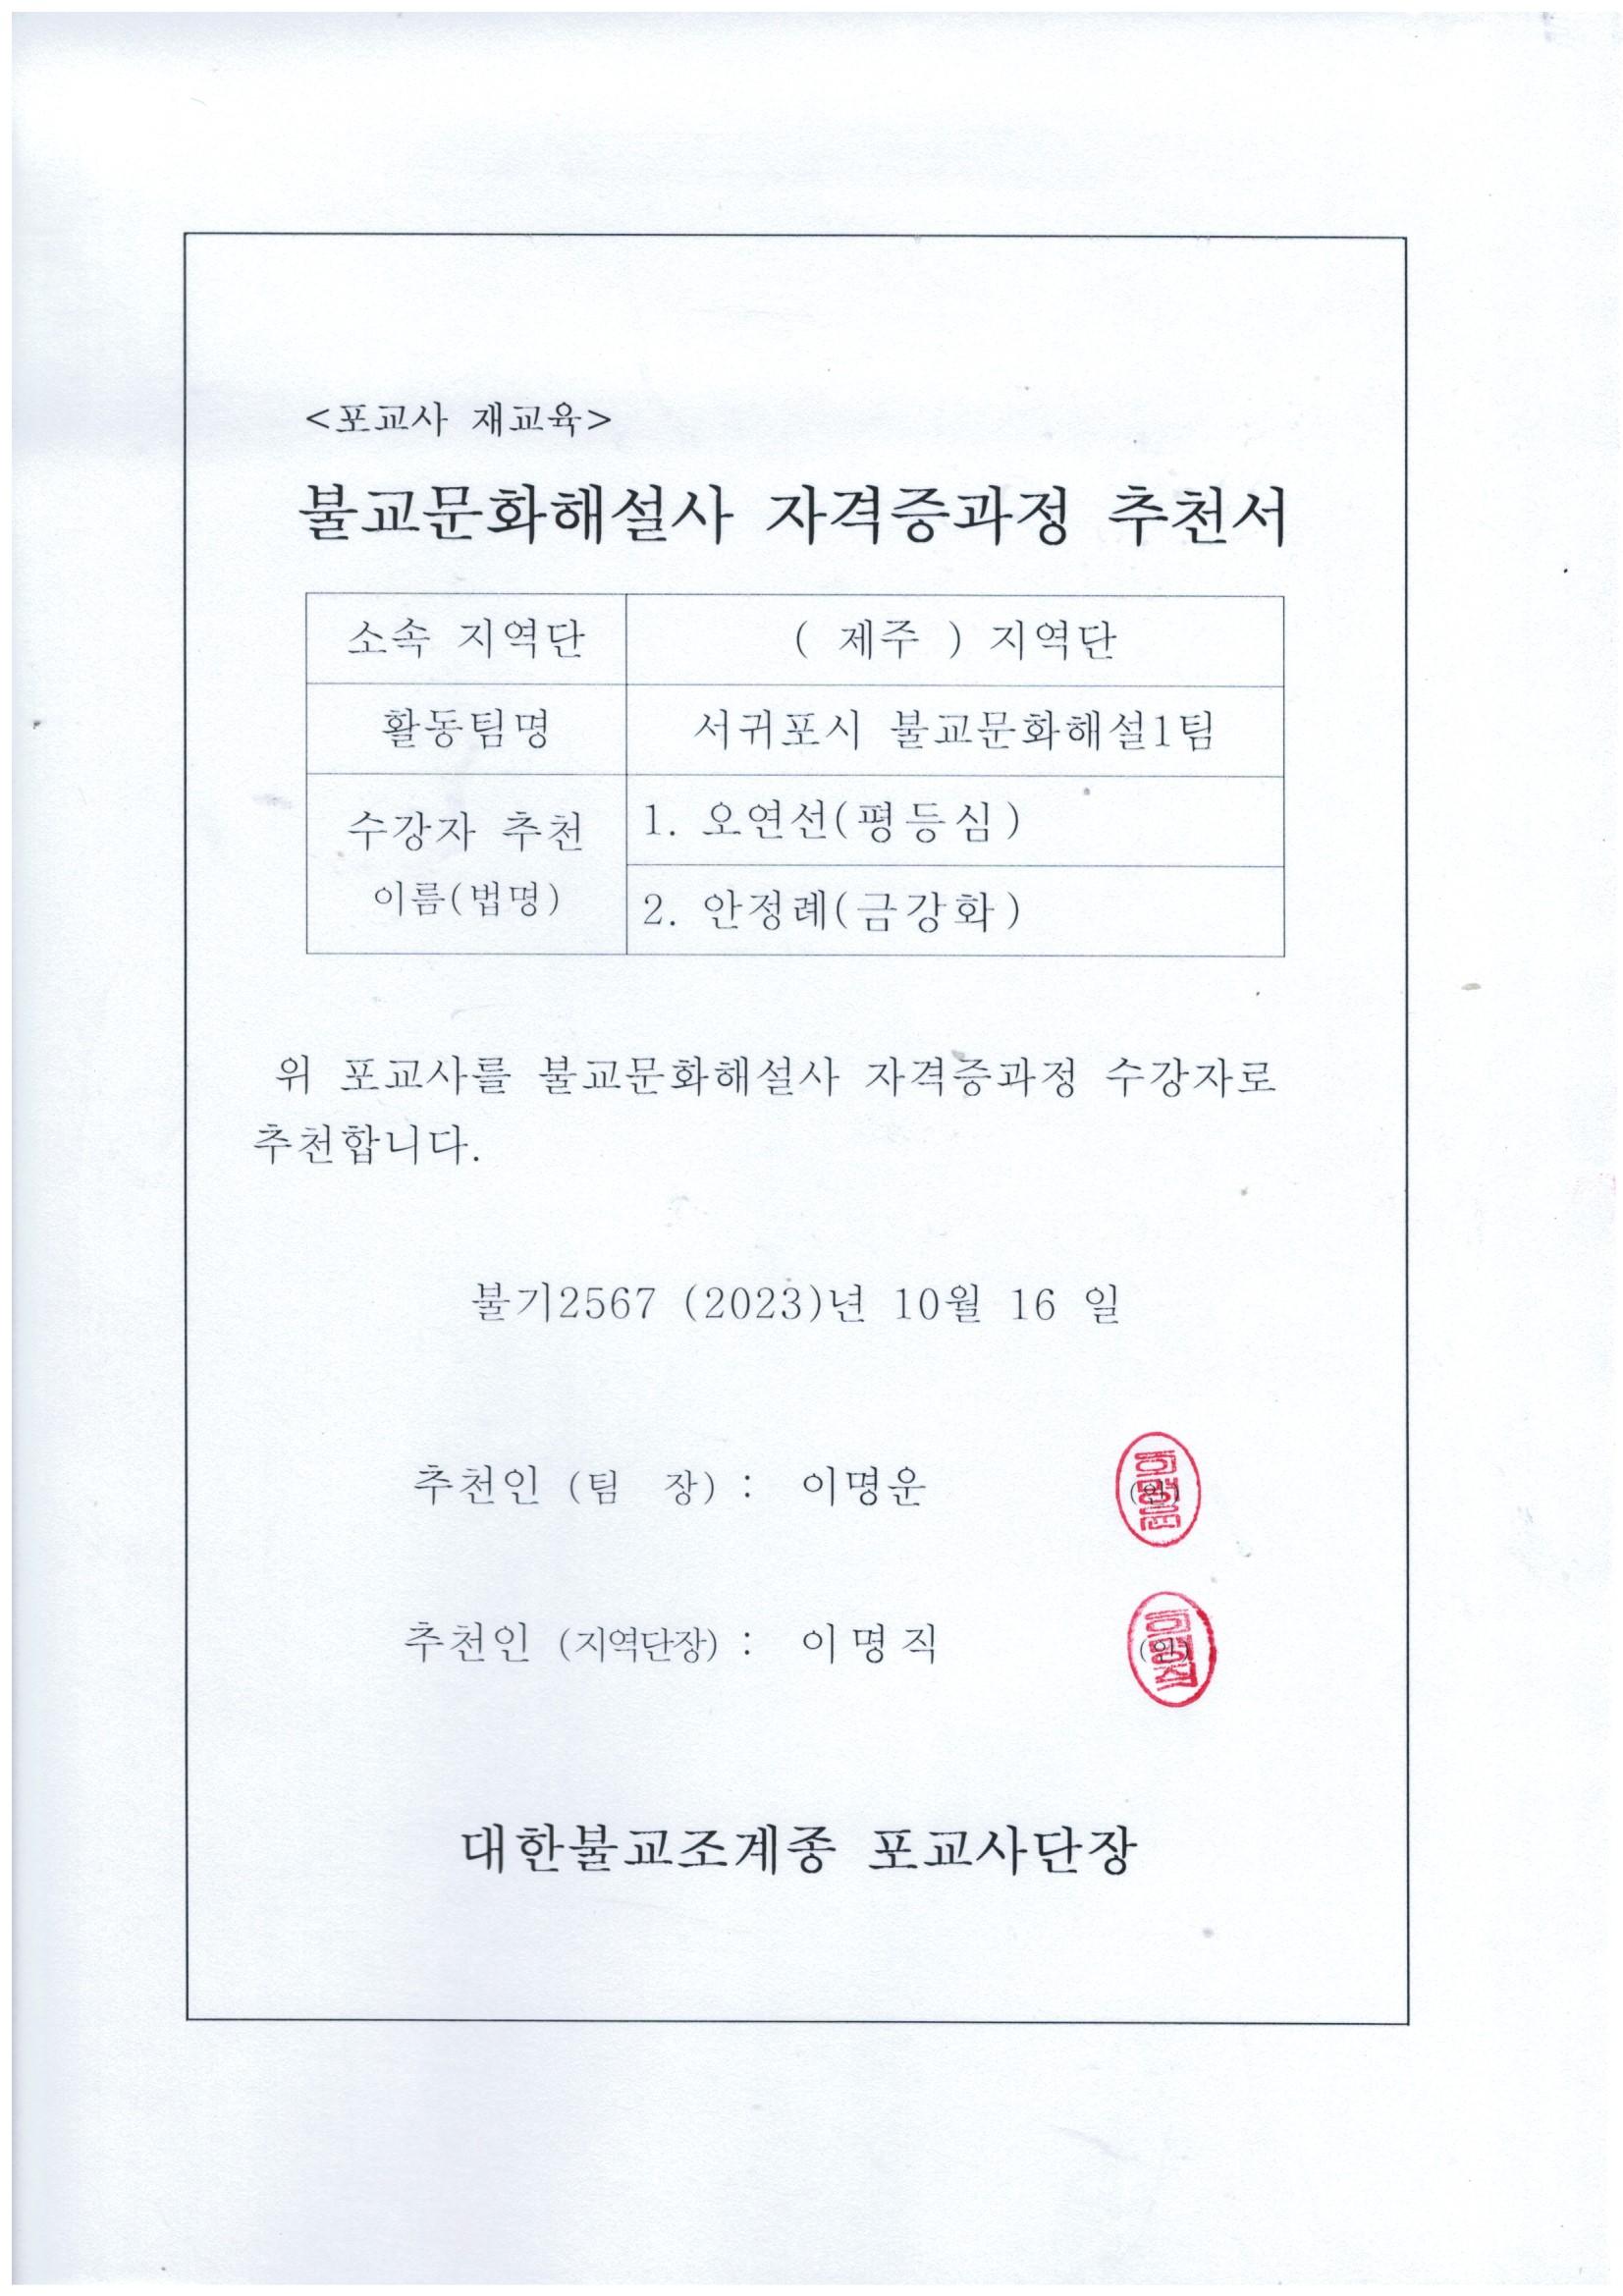 불교문화자격증추천서-서귀포(1).jpg